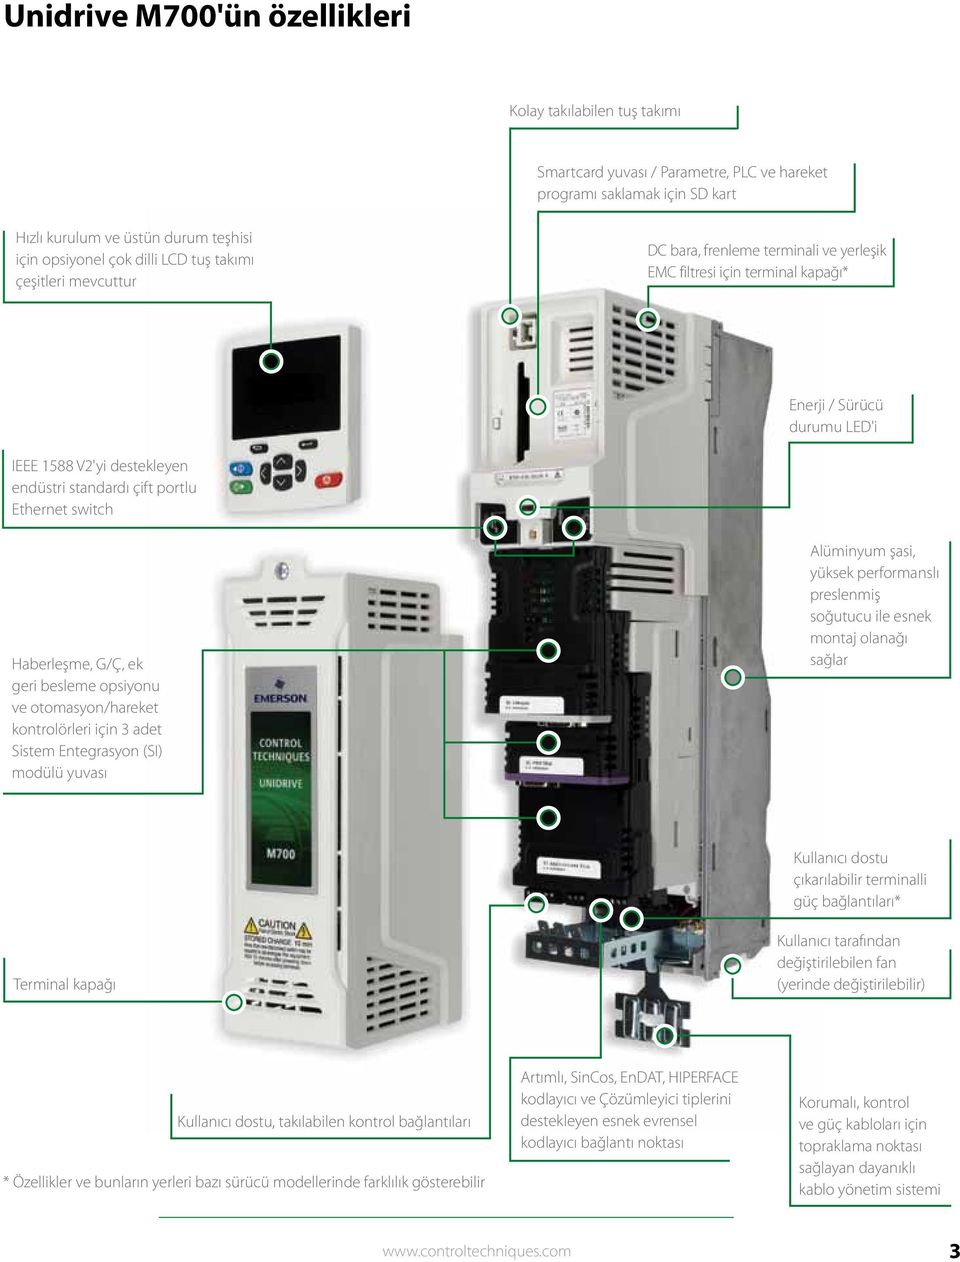 Ethernet switch Haberleşme, G/Ç, ek geri besleme opsiyonu ve otomasyon/hareket kontrolörleri için adet Sistem Entegrasyon (SI) modülü yuvası Alüminyum şasi, yüksek performanslı preslenmiş soğutucu